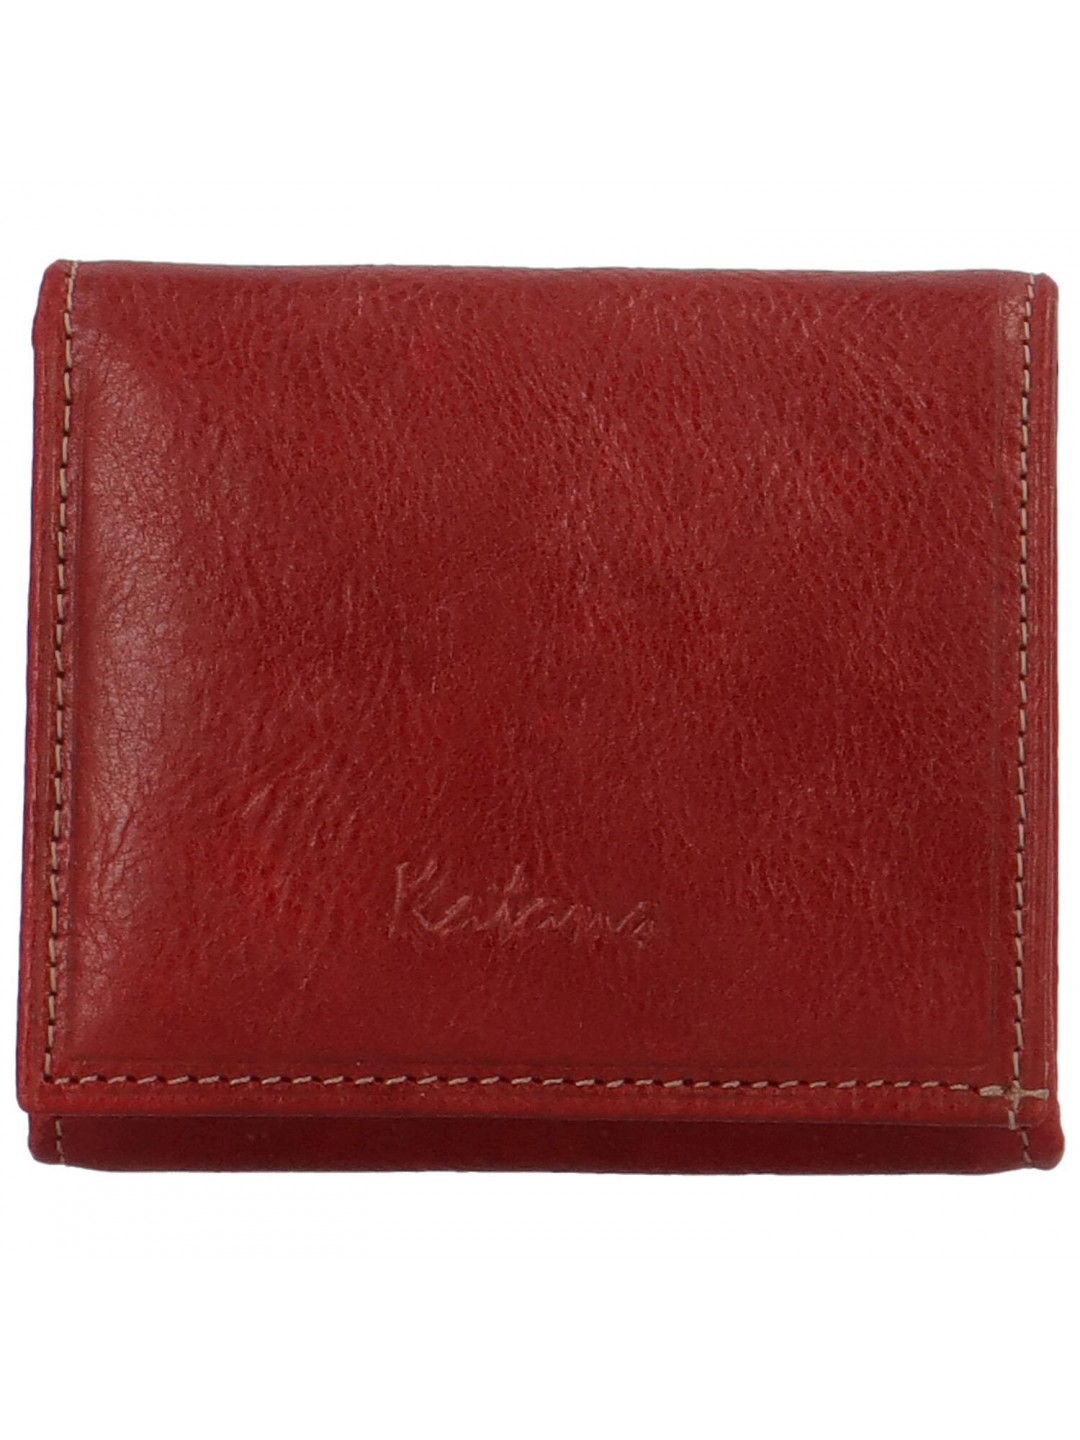 Elegantní dámská peněženka Katana Kittina červená